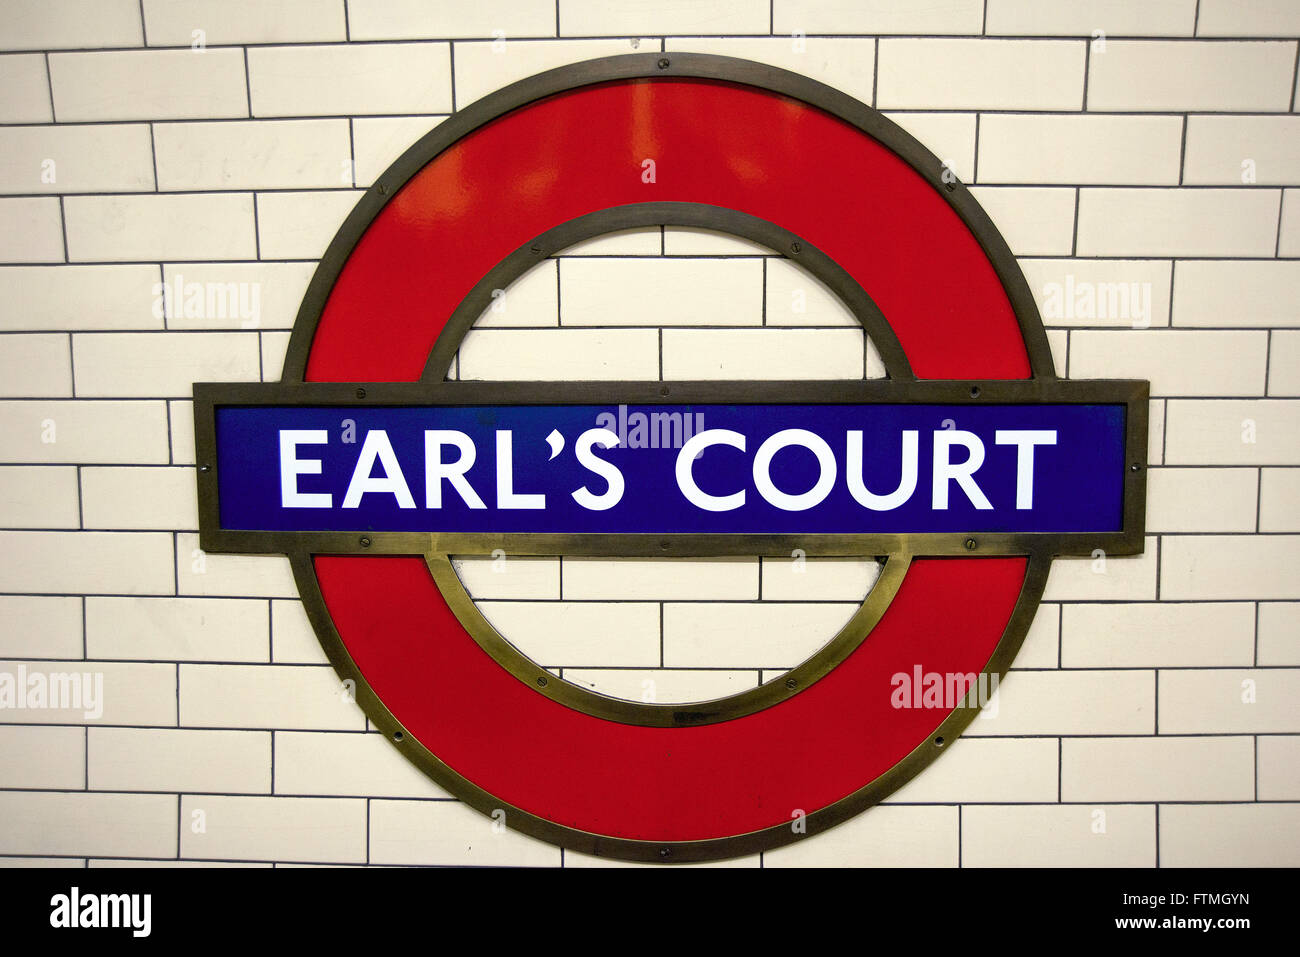 Saison de Earl's Court, dans l'arrondissement du même nom Banque D'Images